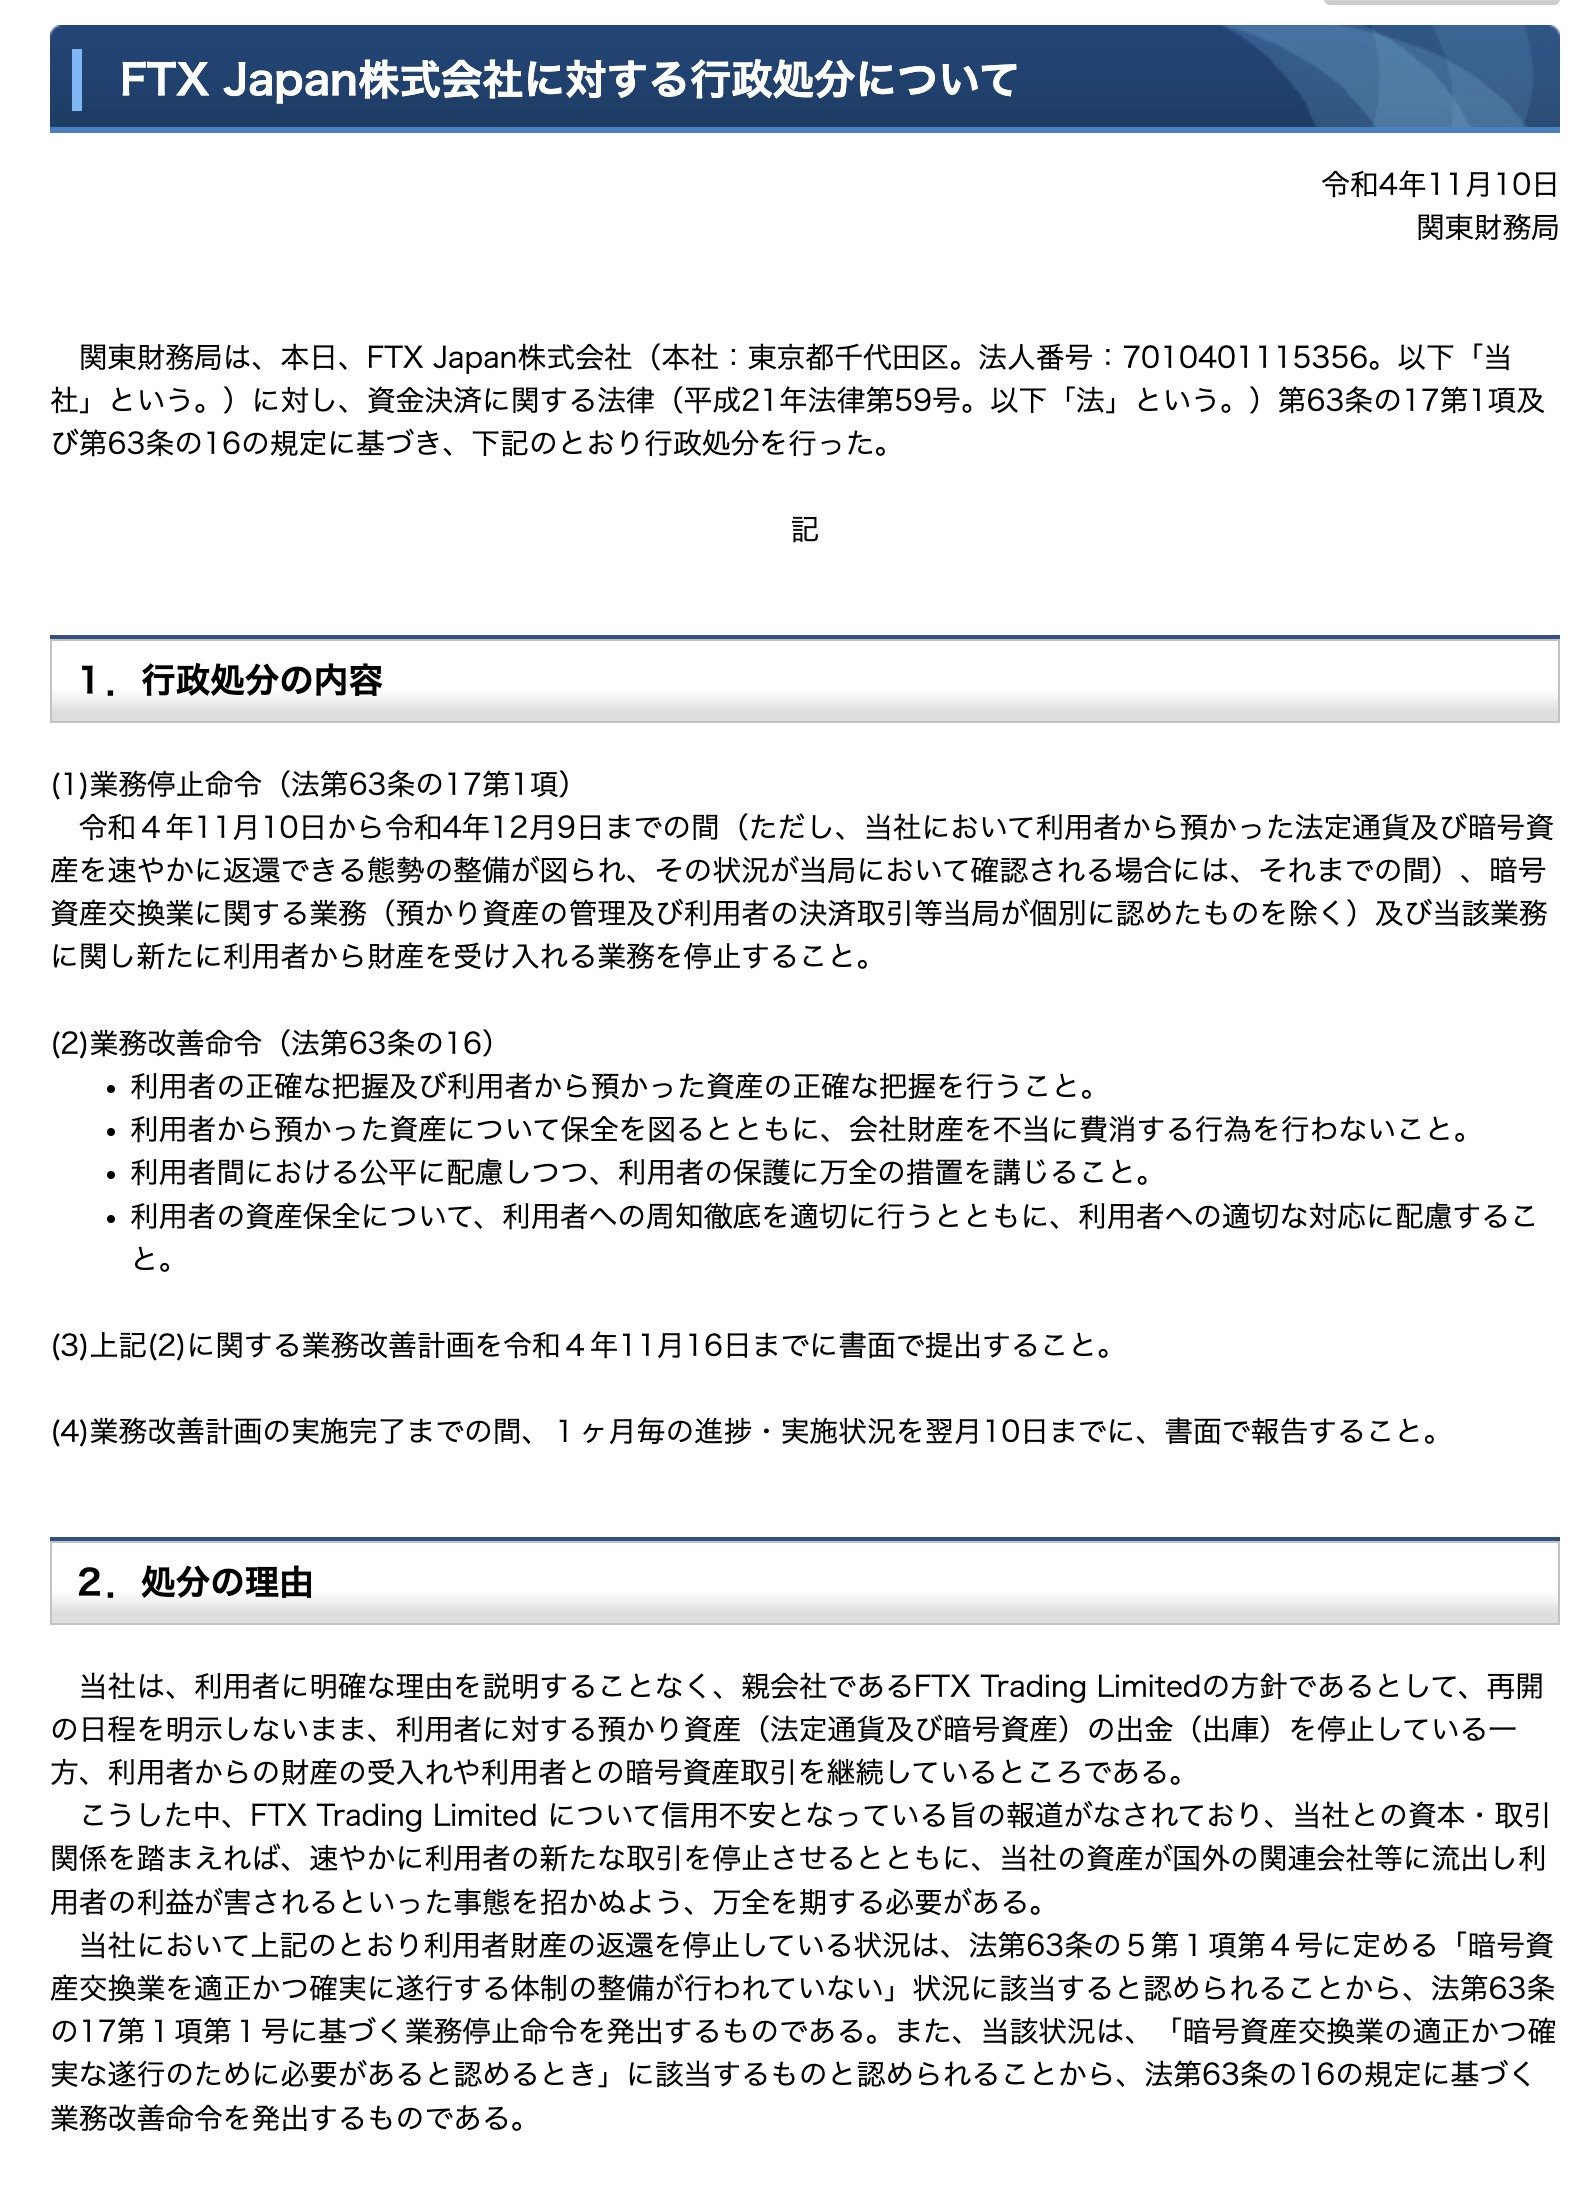 関東財務局、FTX Japanに行政処分　ユーザーの資産保全求める